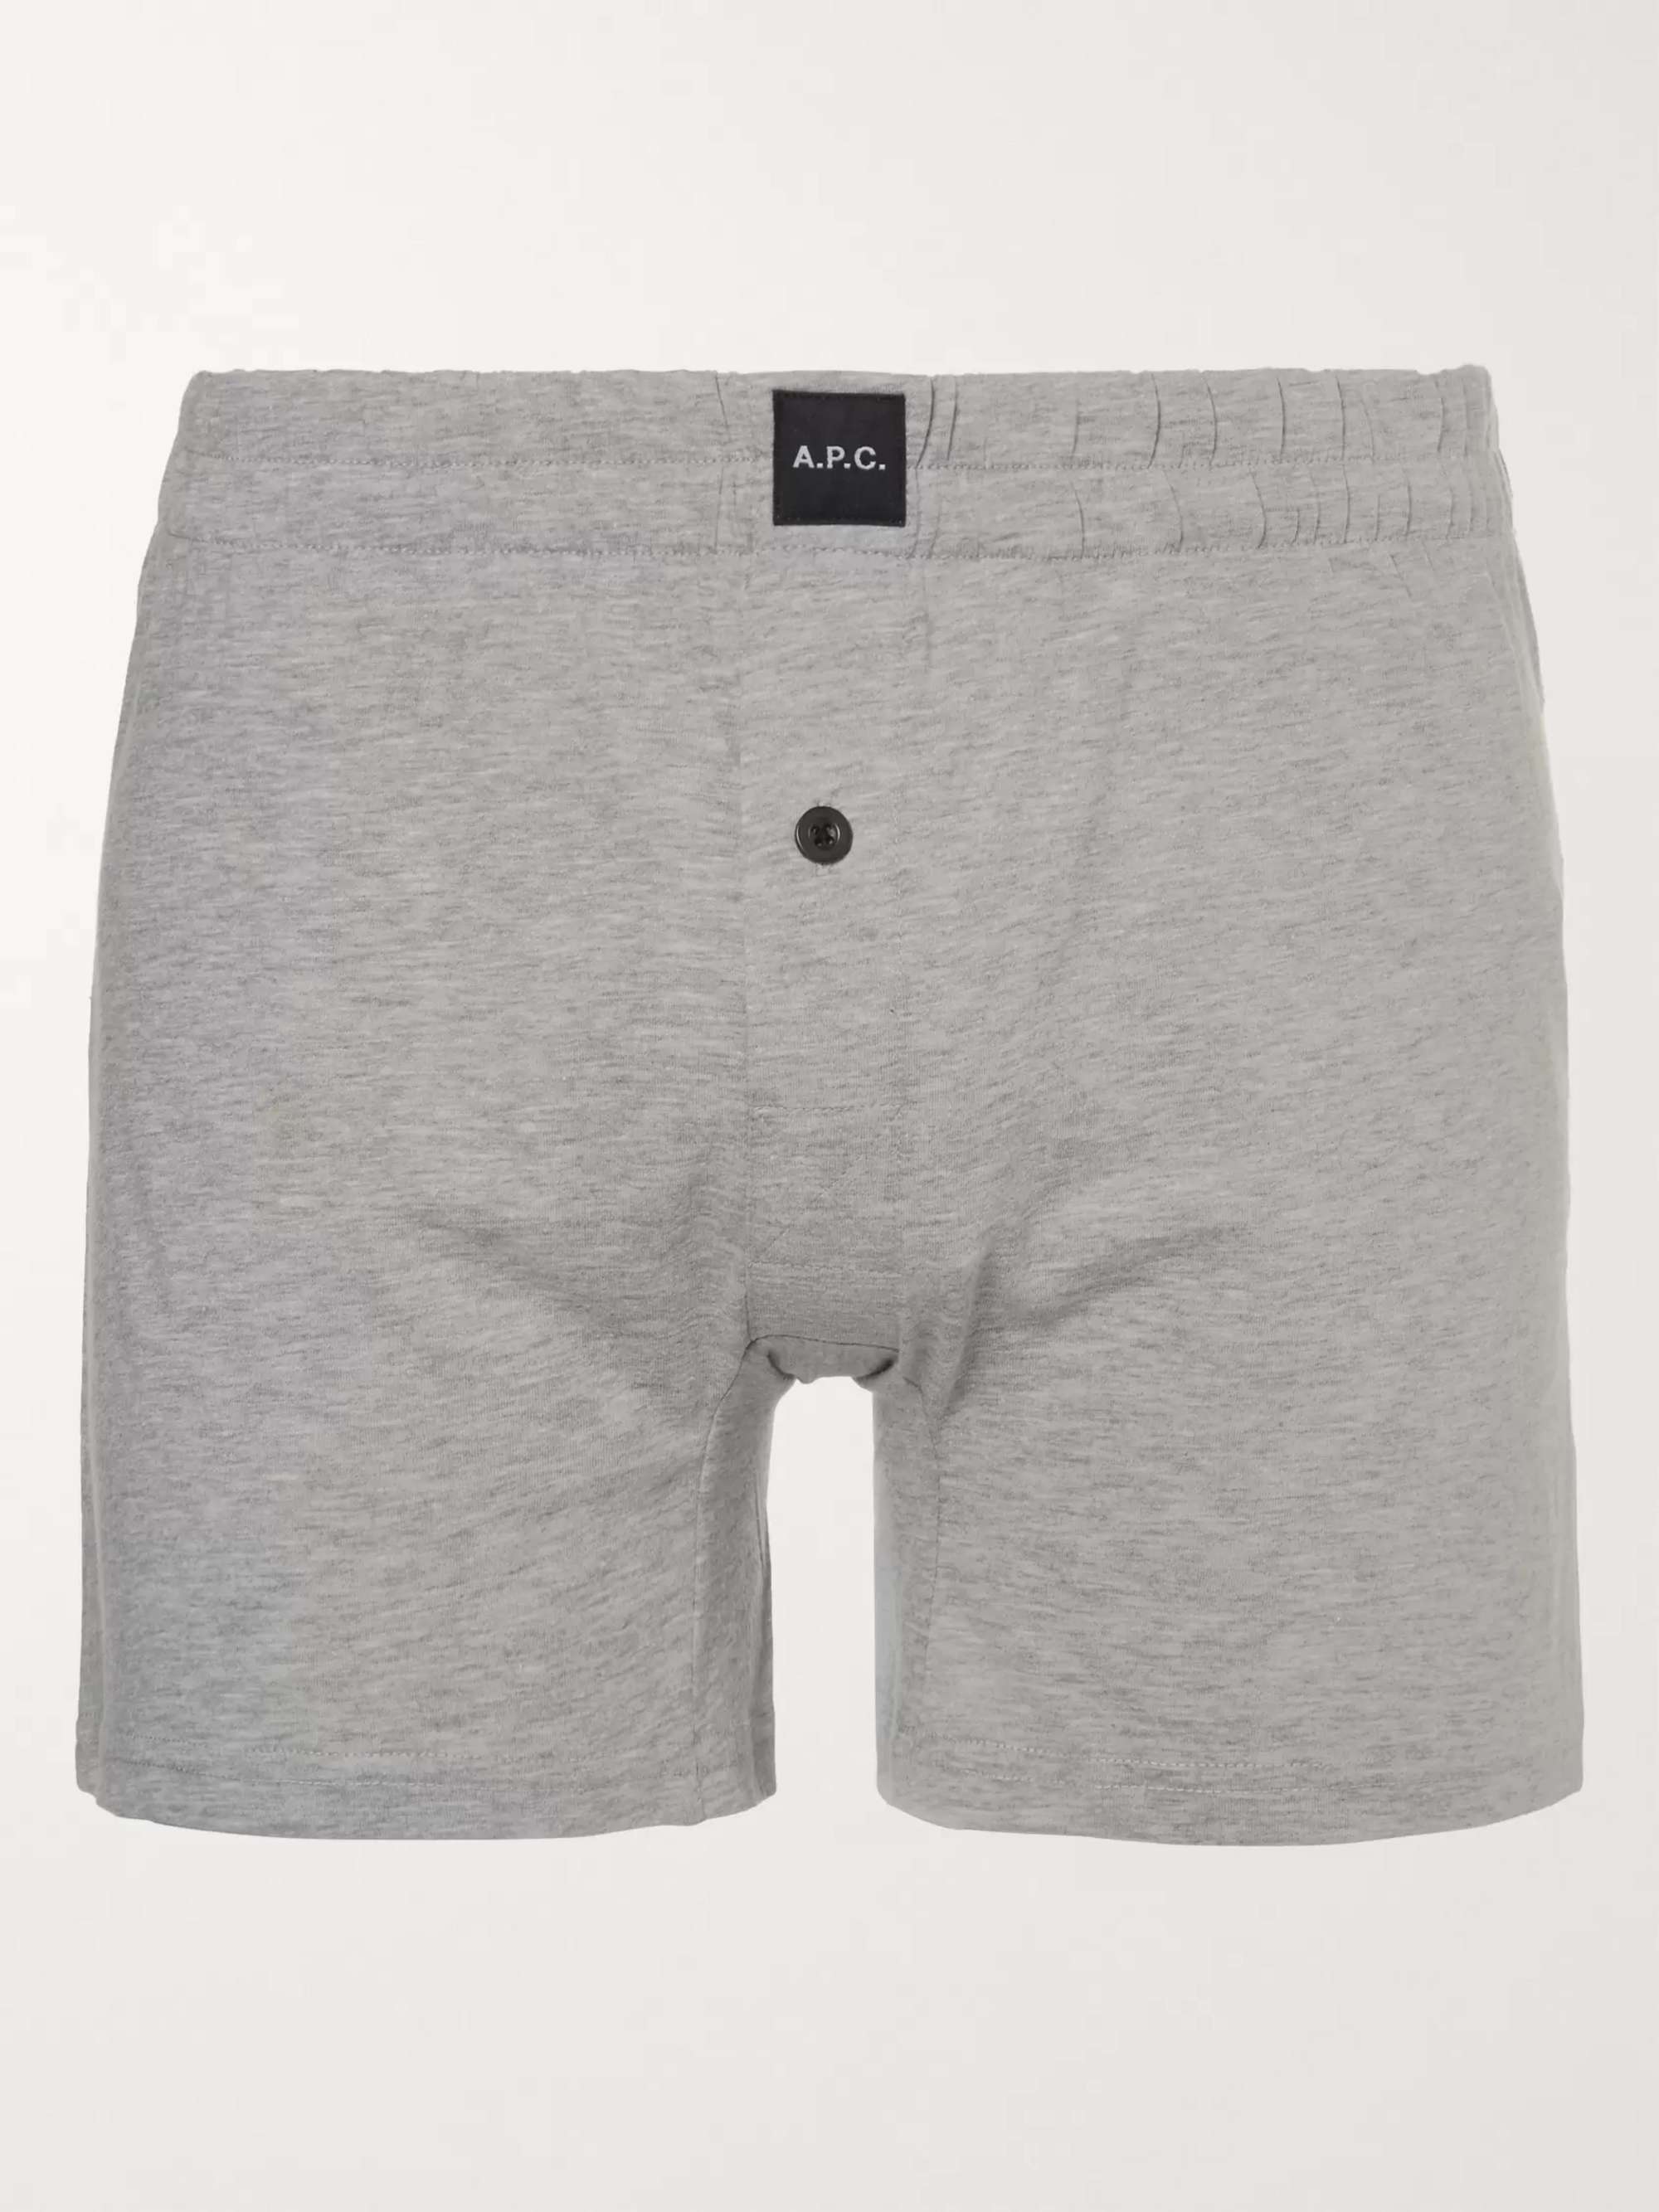 A.P.C. Cotton-Jersey Boxer Shorts | MR PORTER